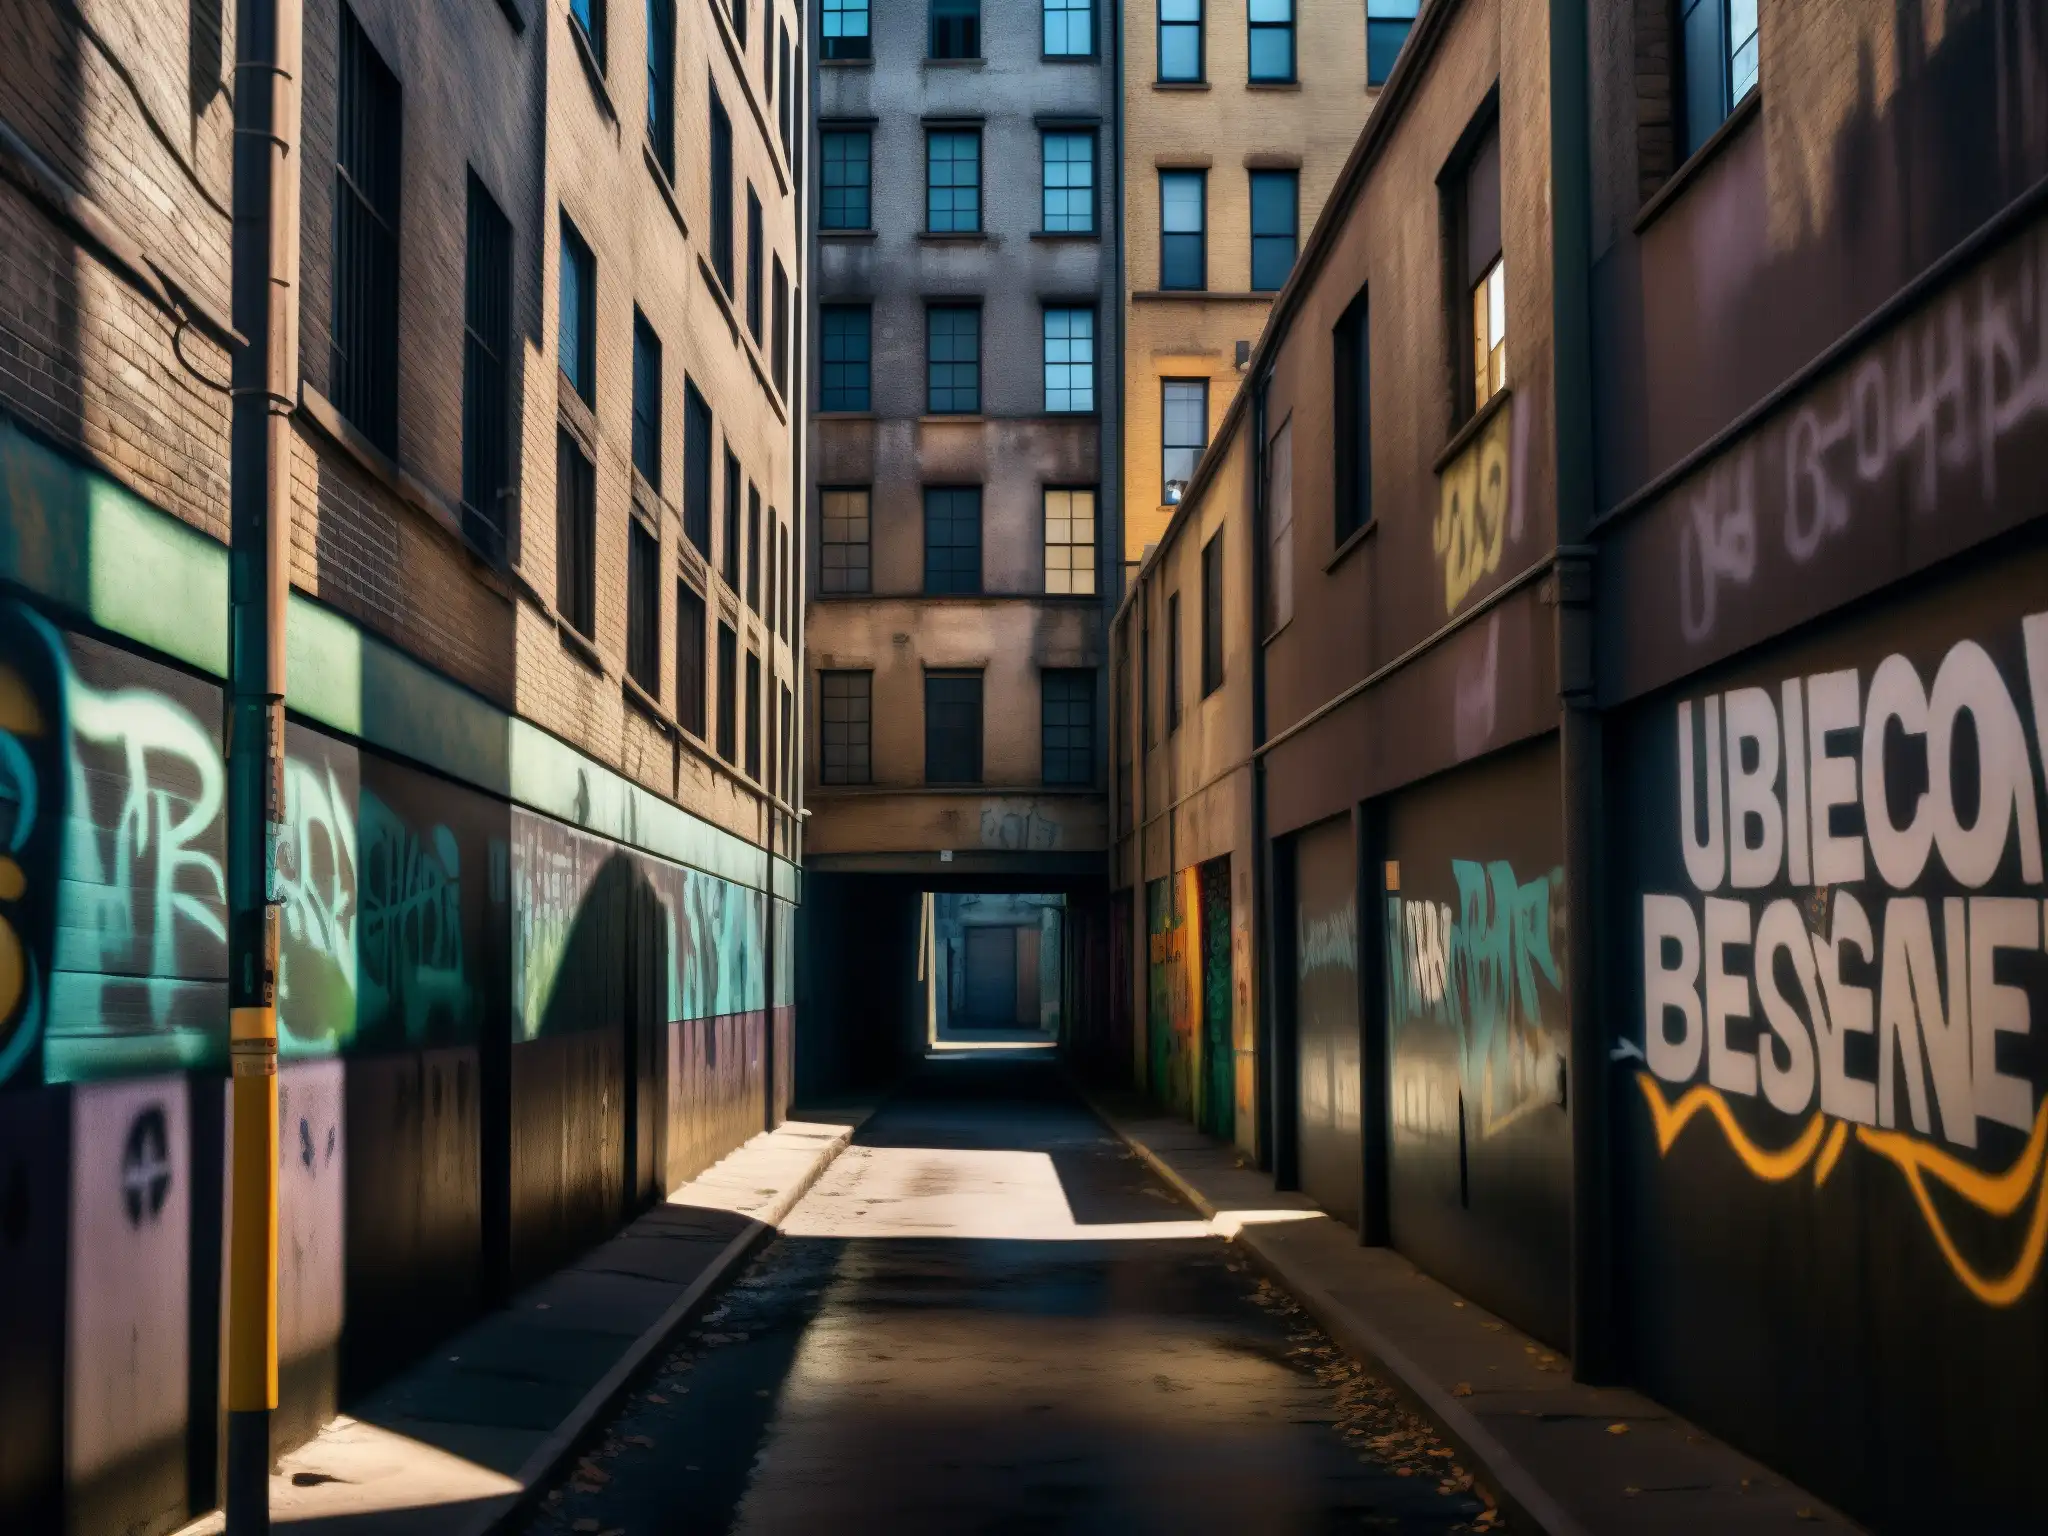 Alleyway urbano con grafitis y sombras, evocando misterio y atracción y repulsión leyendas urbanas